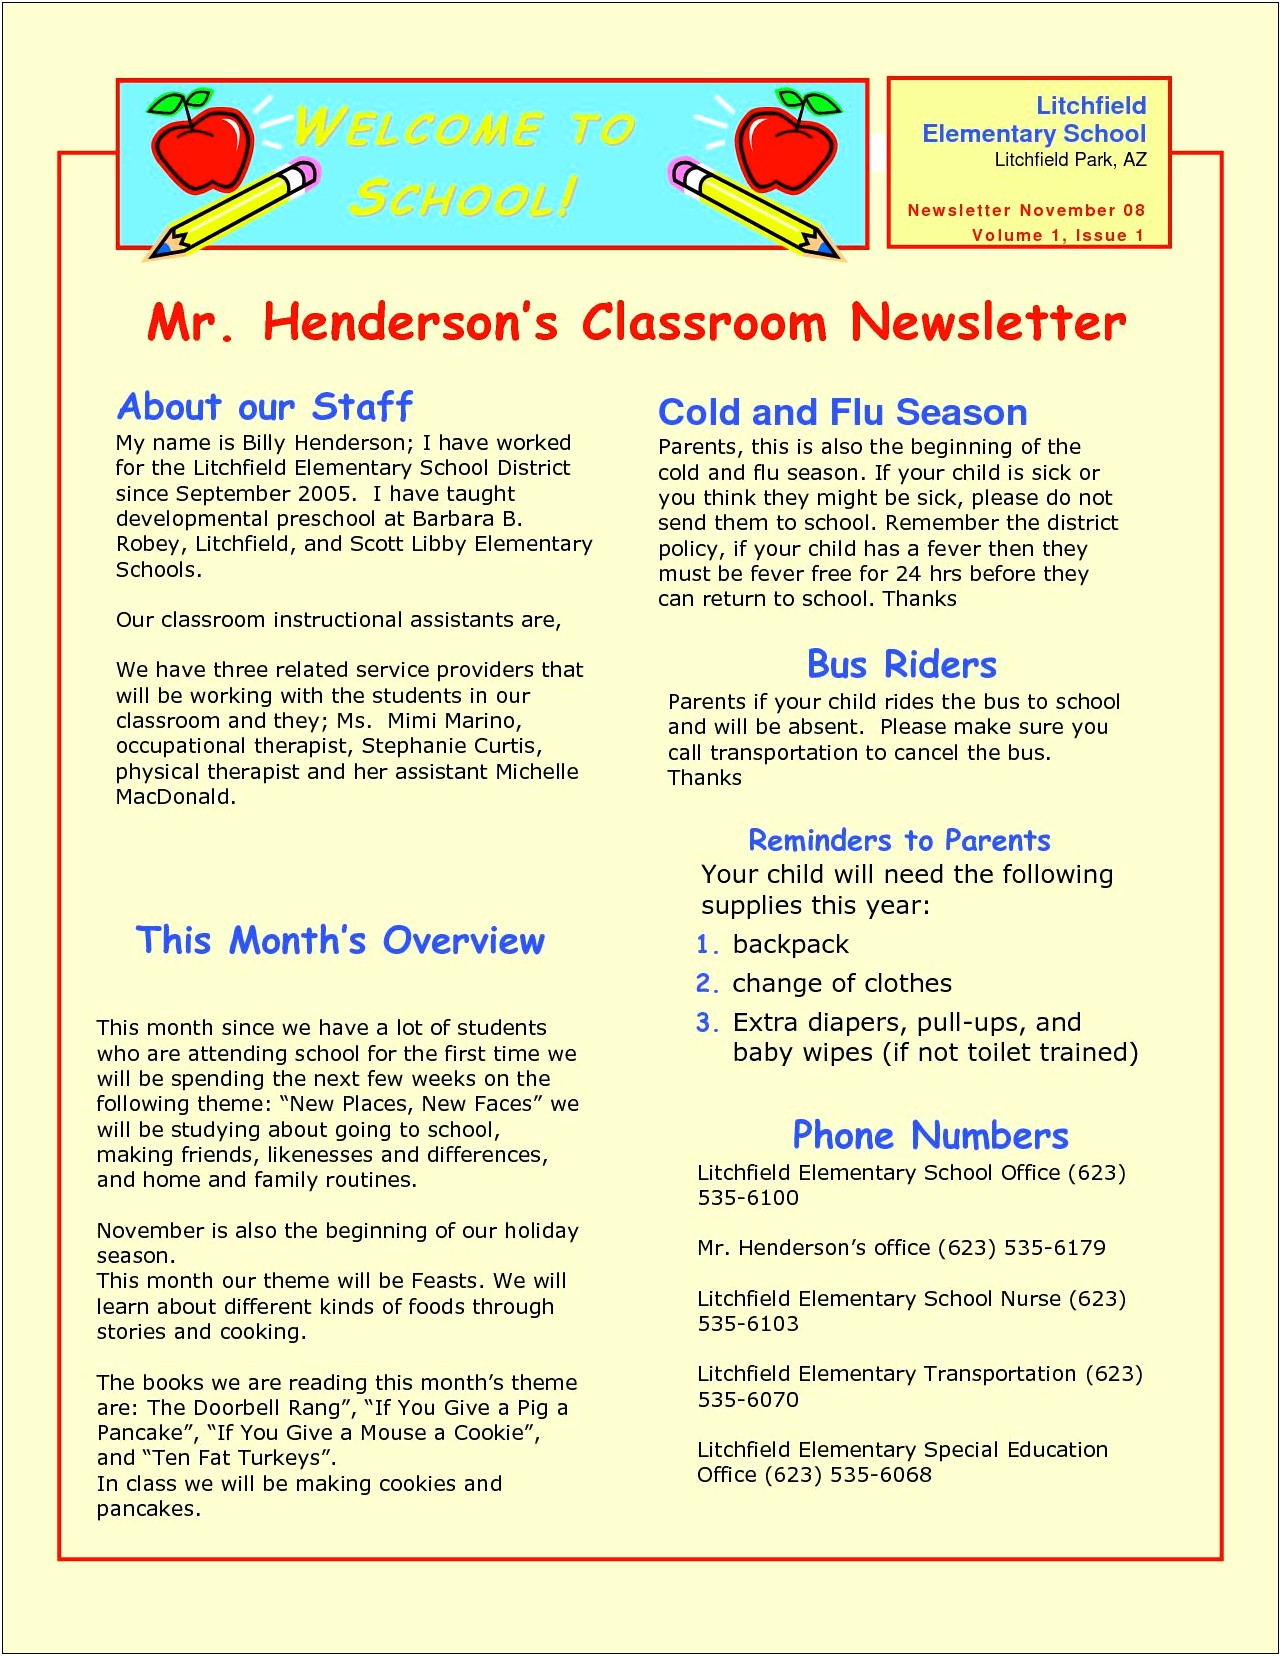 Free Newsletter Templates For Elementary Teachers